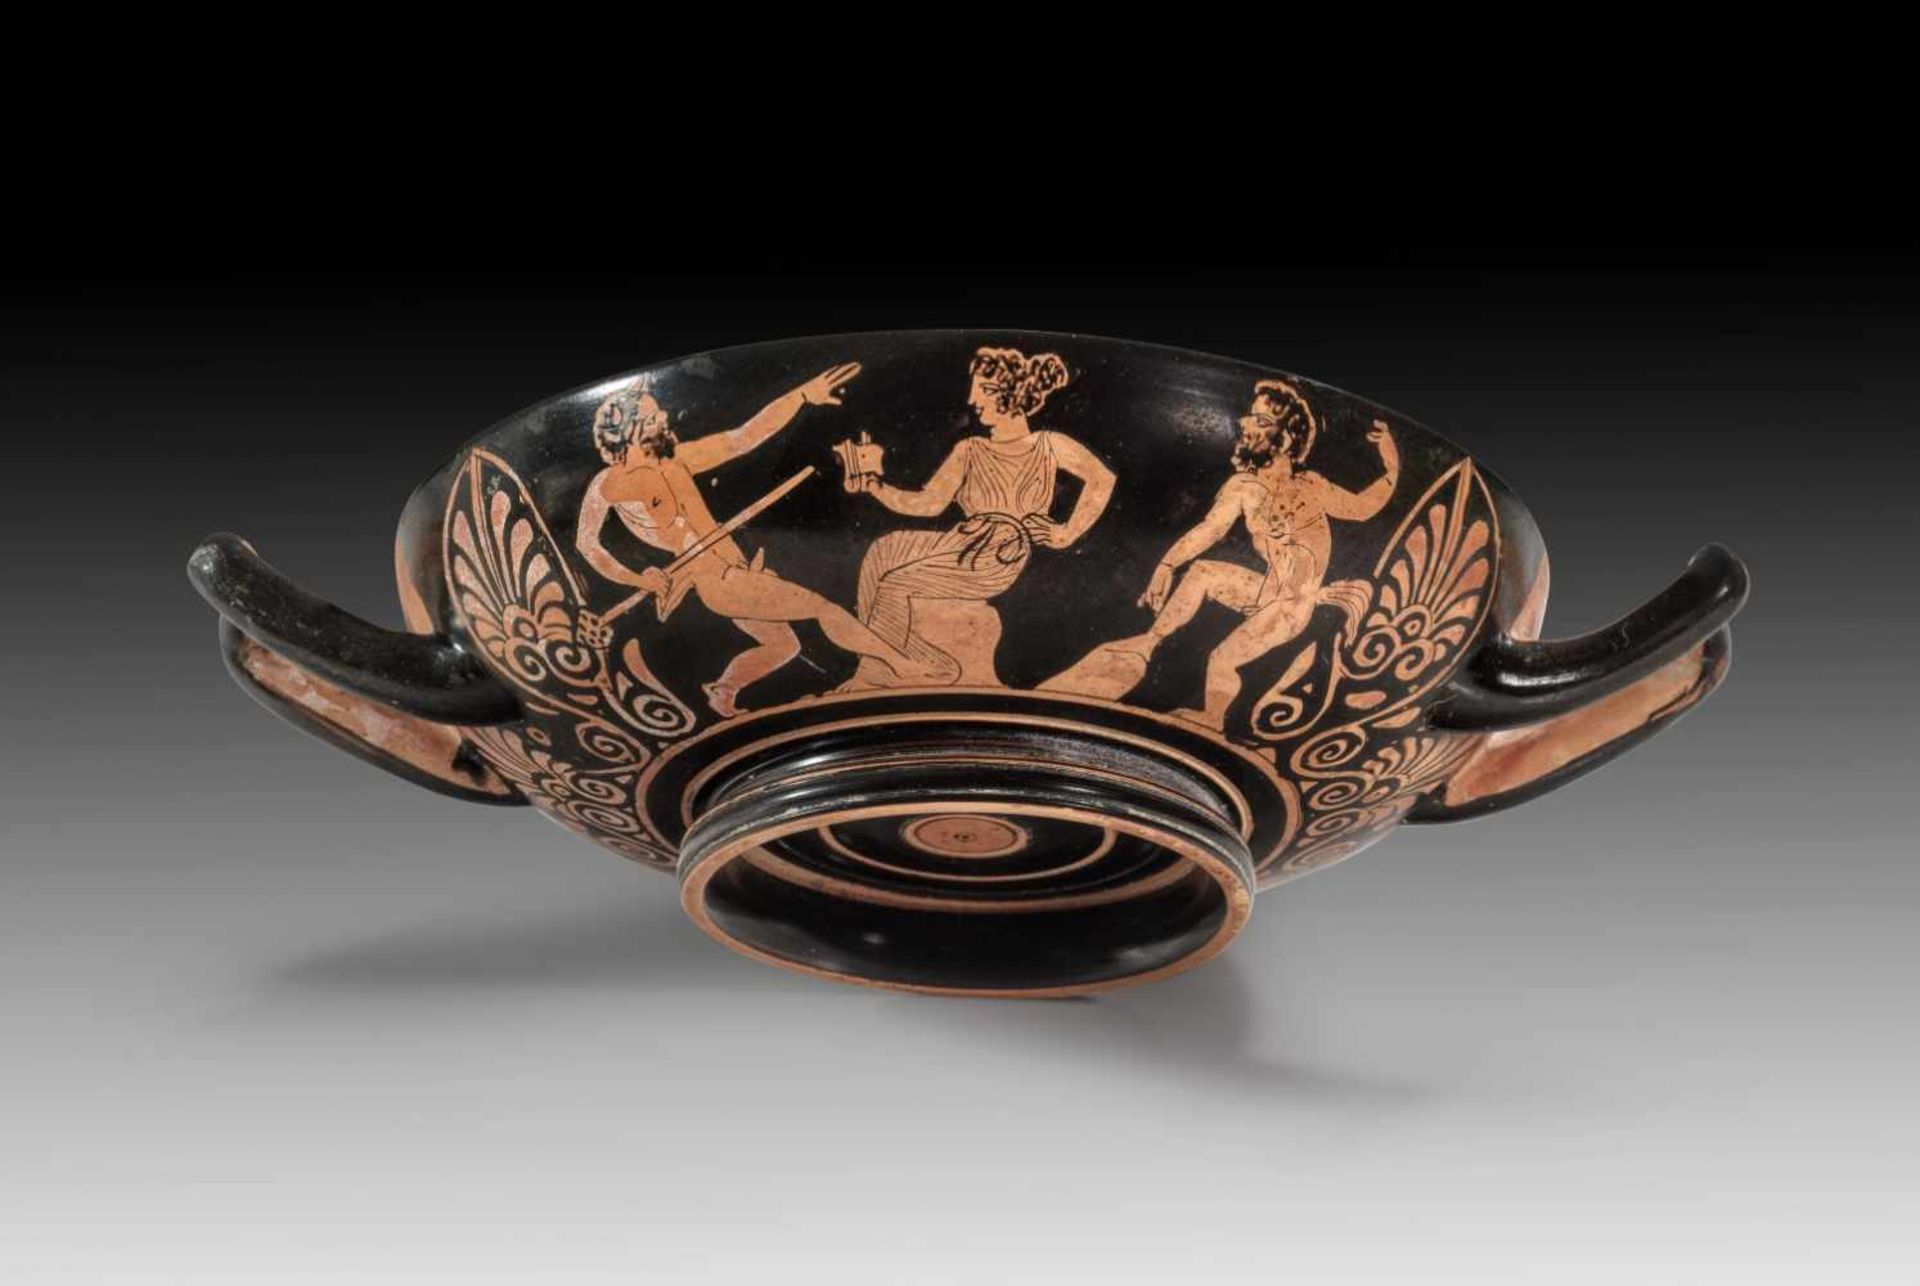 Attische Schale des Meleager-Malers oder in seiner Art. Um 390 v. Chr. H 6,1cm, B mit Henkeln 24, - Bild 2 aus 3